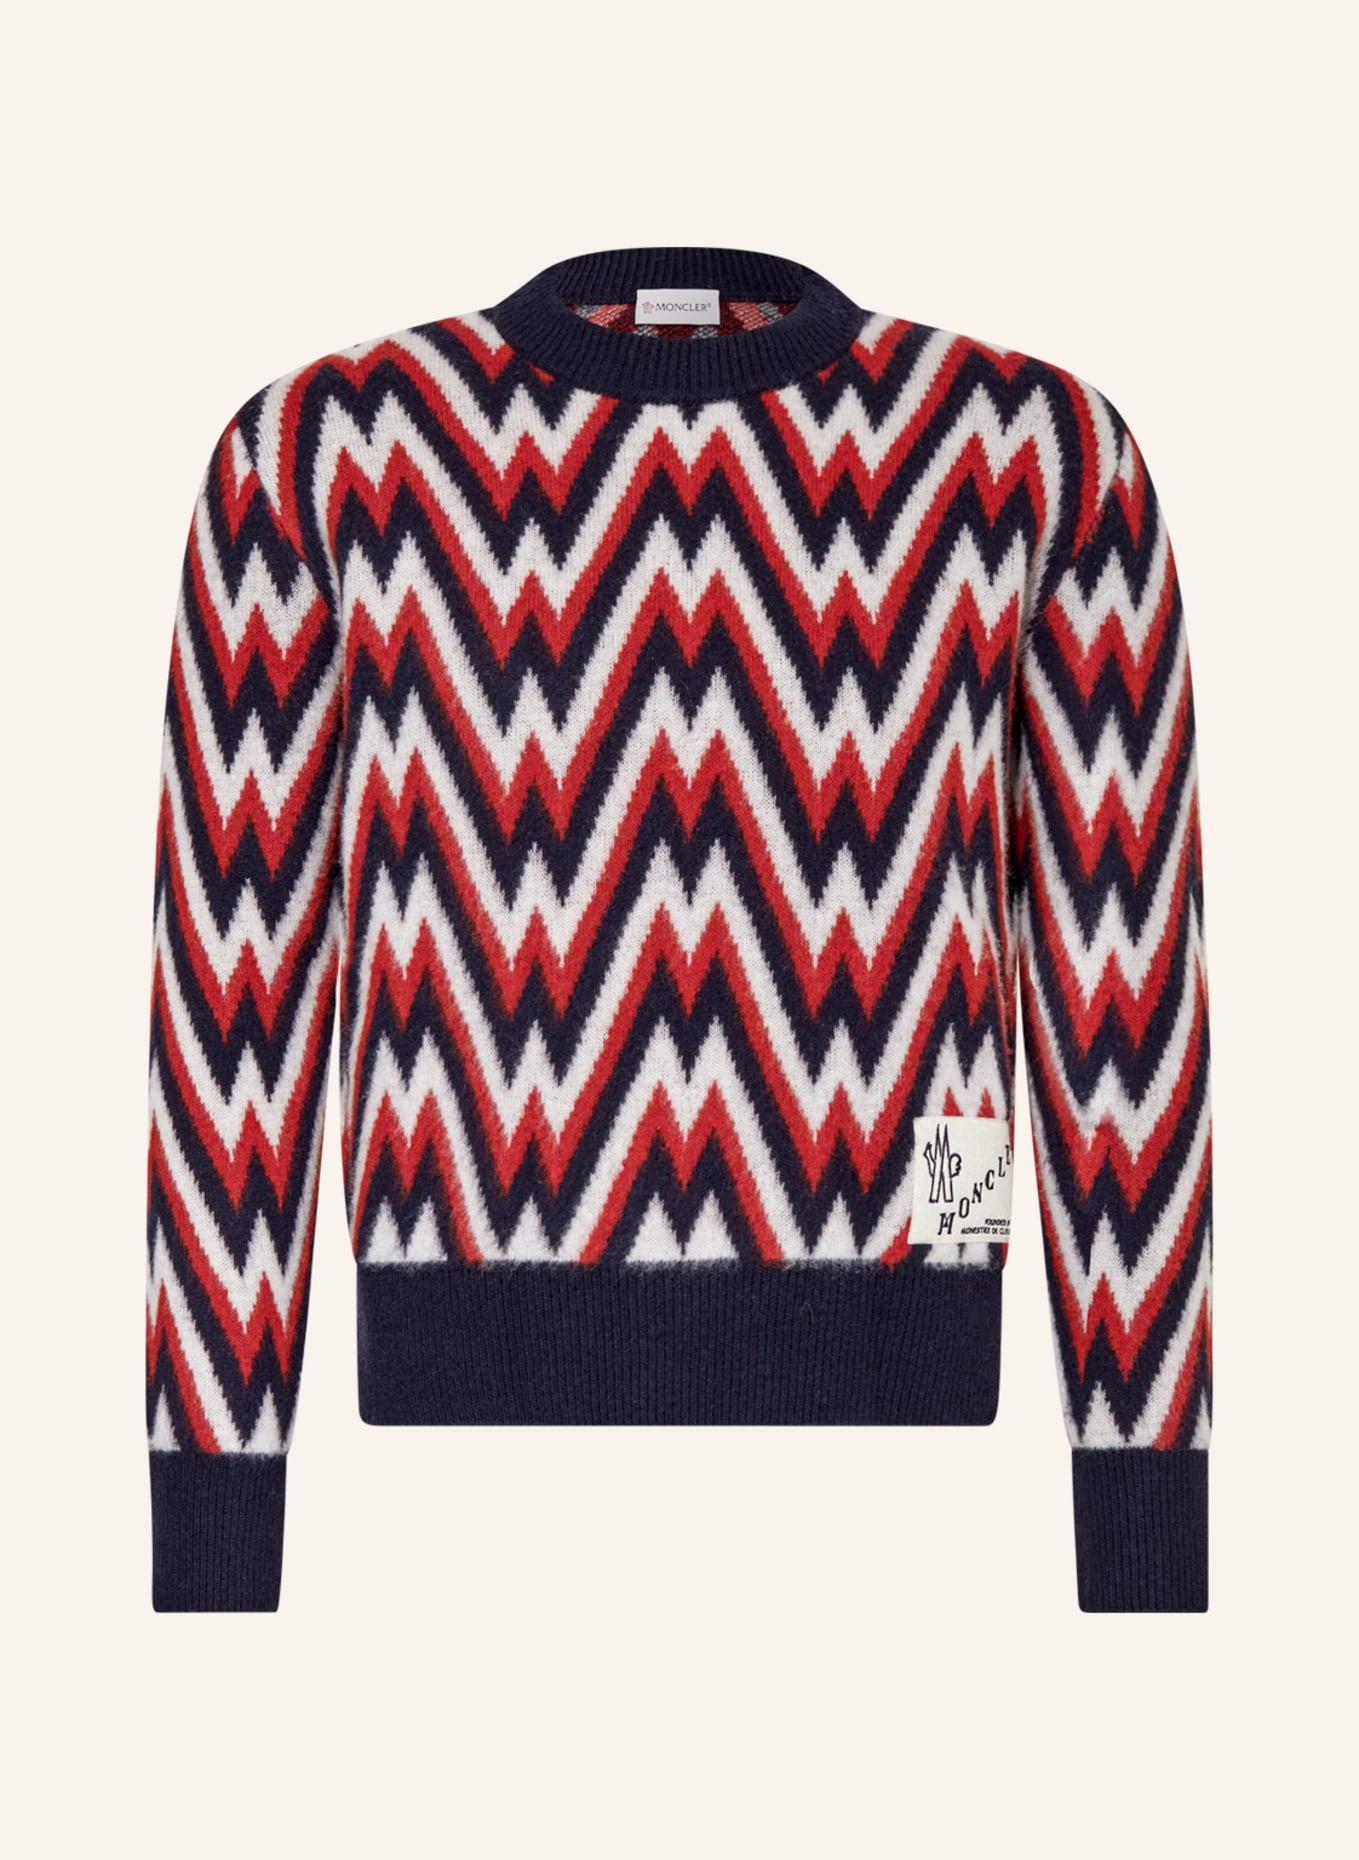 MONCLER Pullover, Farbe: DUNKELBLAU/ DUNKELROT/ WEISS (Bild 1)